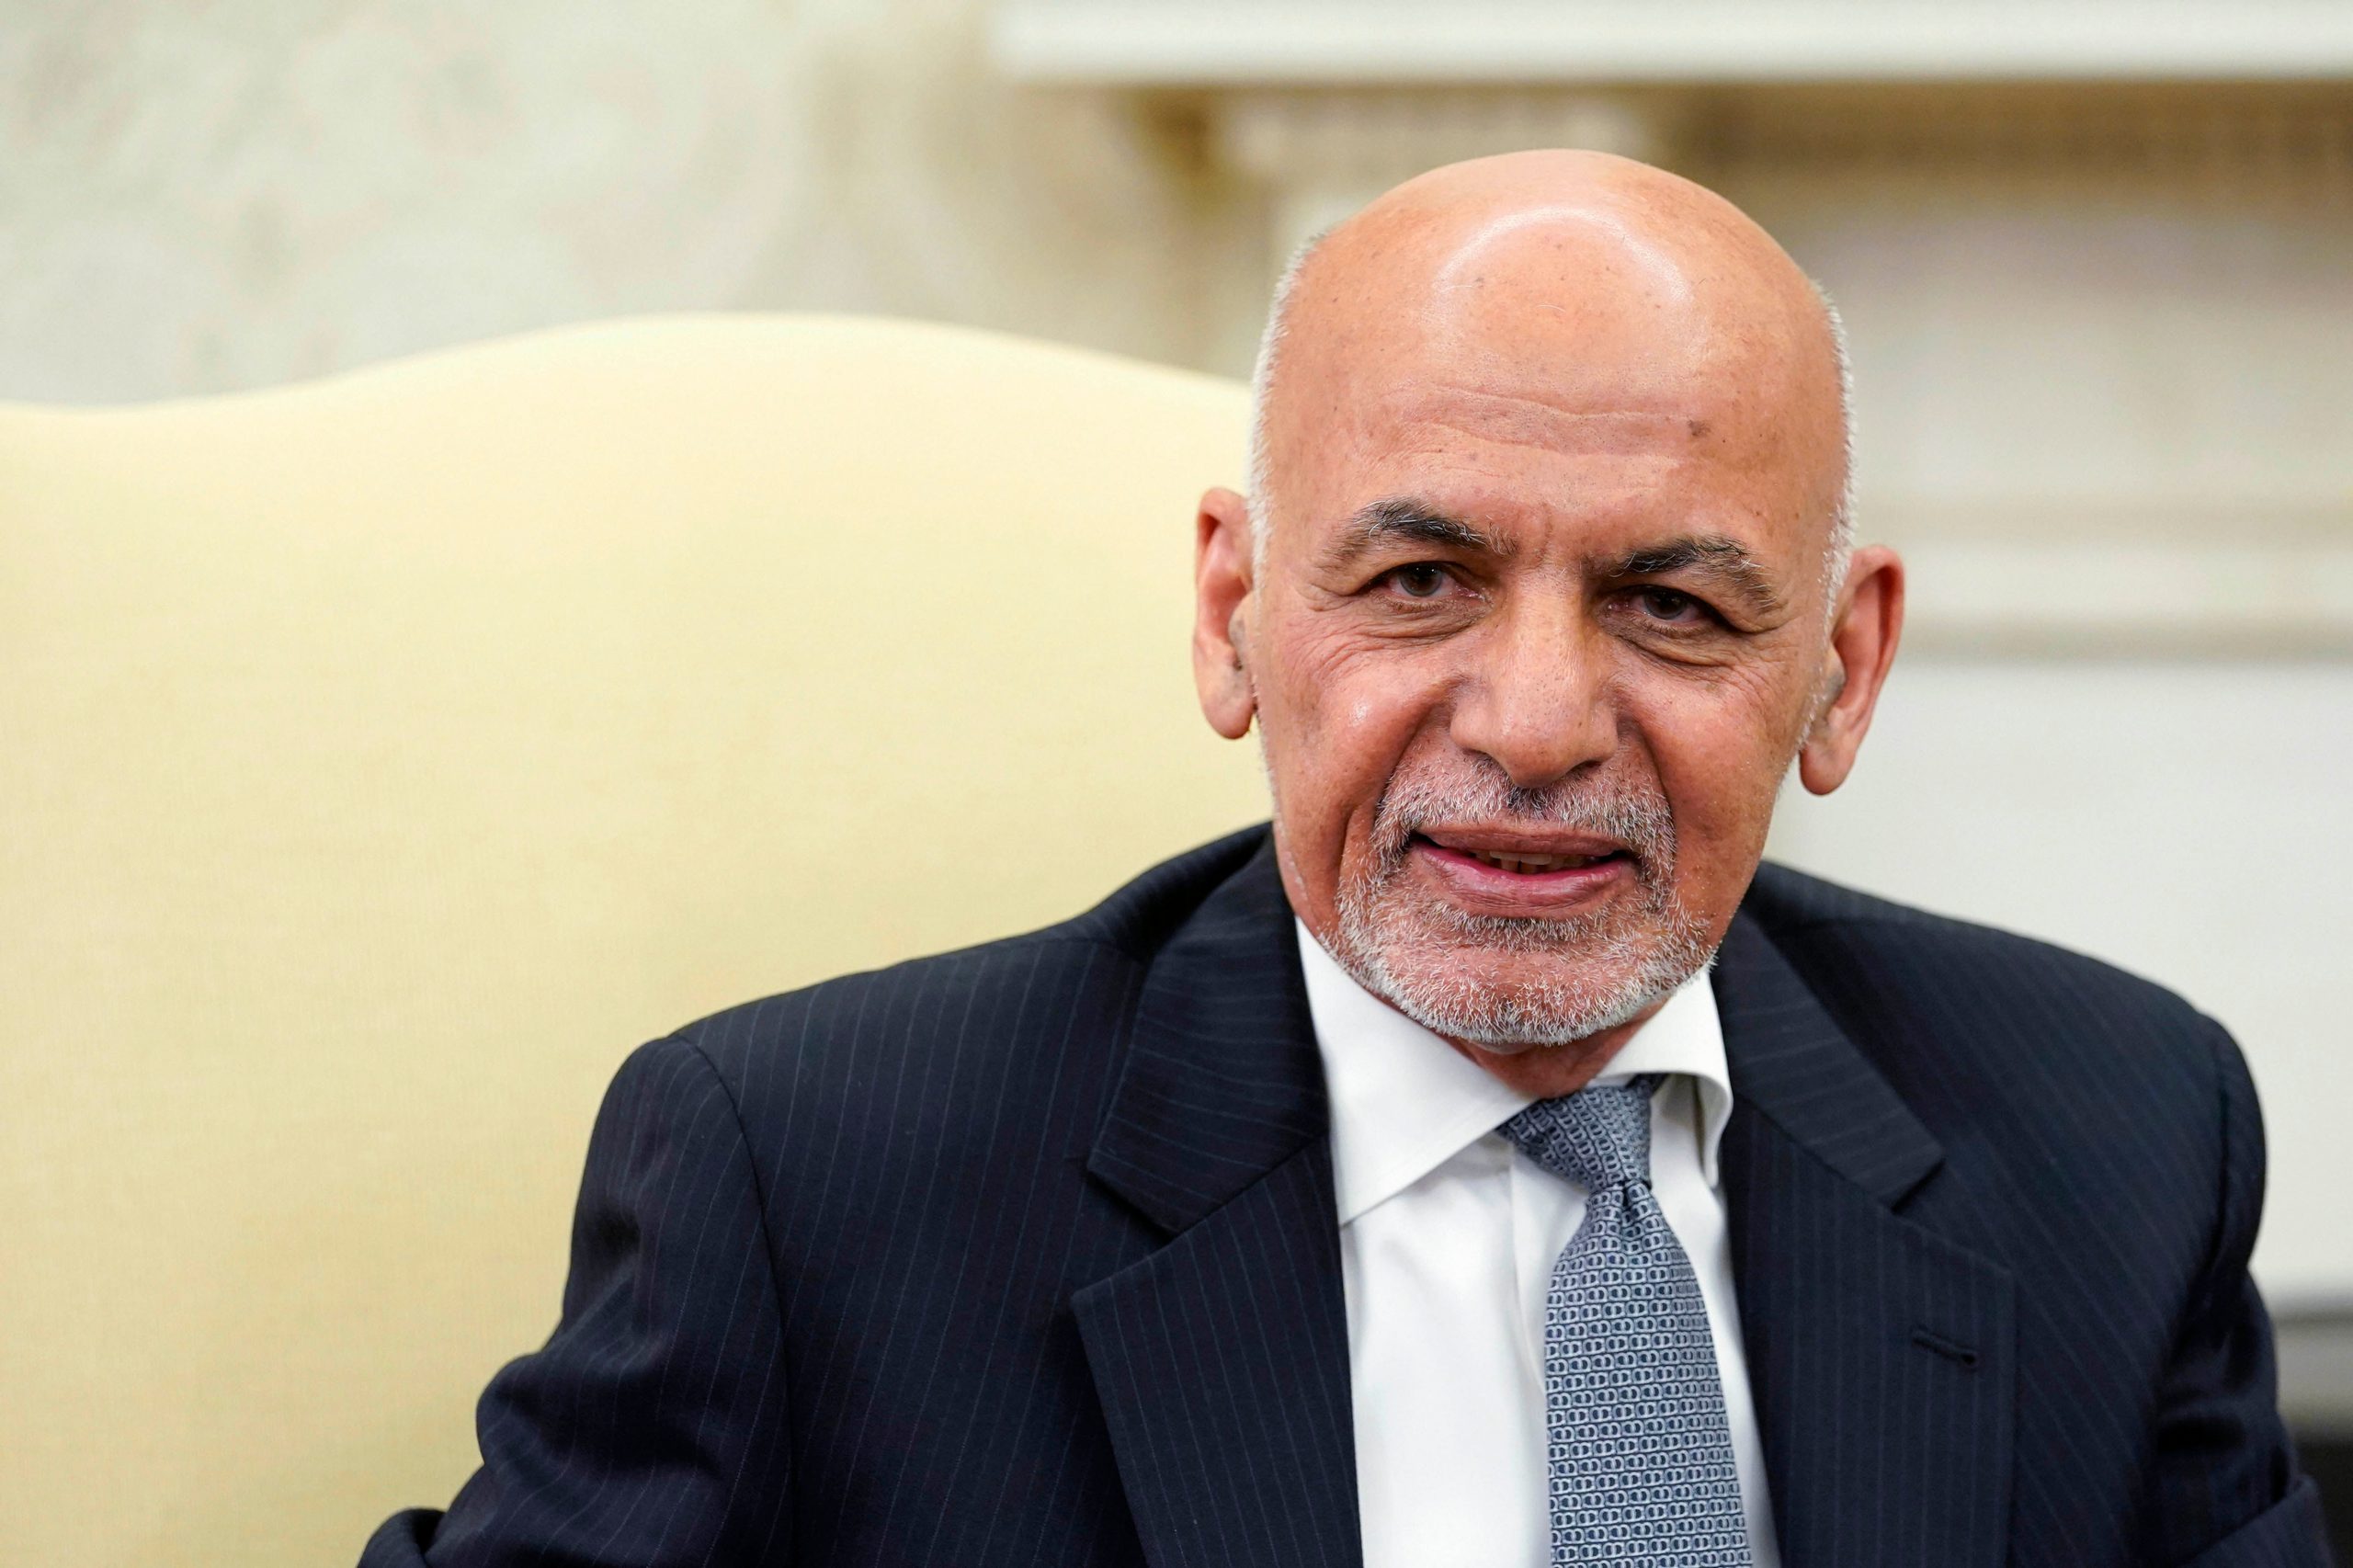 Left to avoid more bloodshed, in talks to return home: Former Afghanistan prez Ashraf Ghani